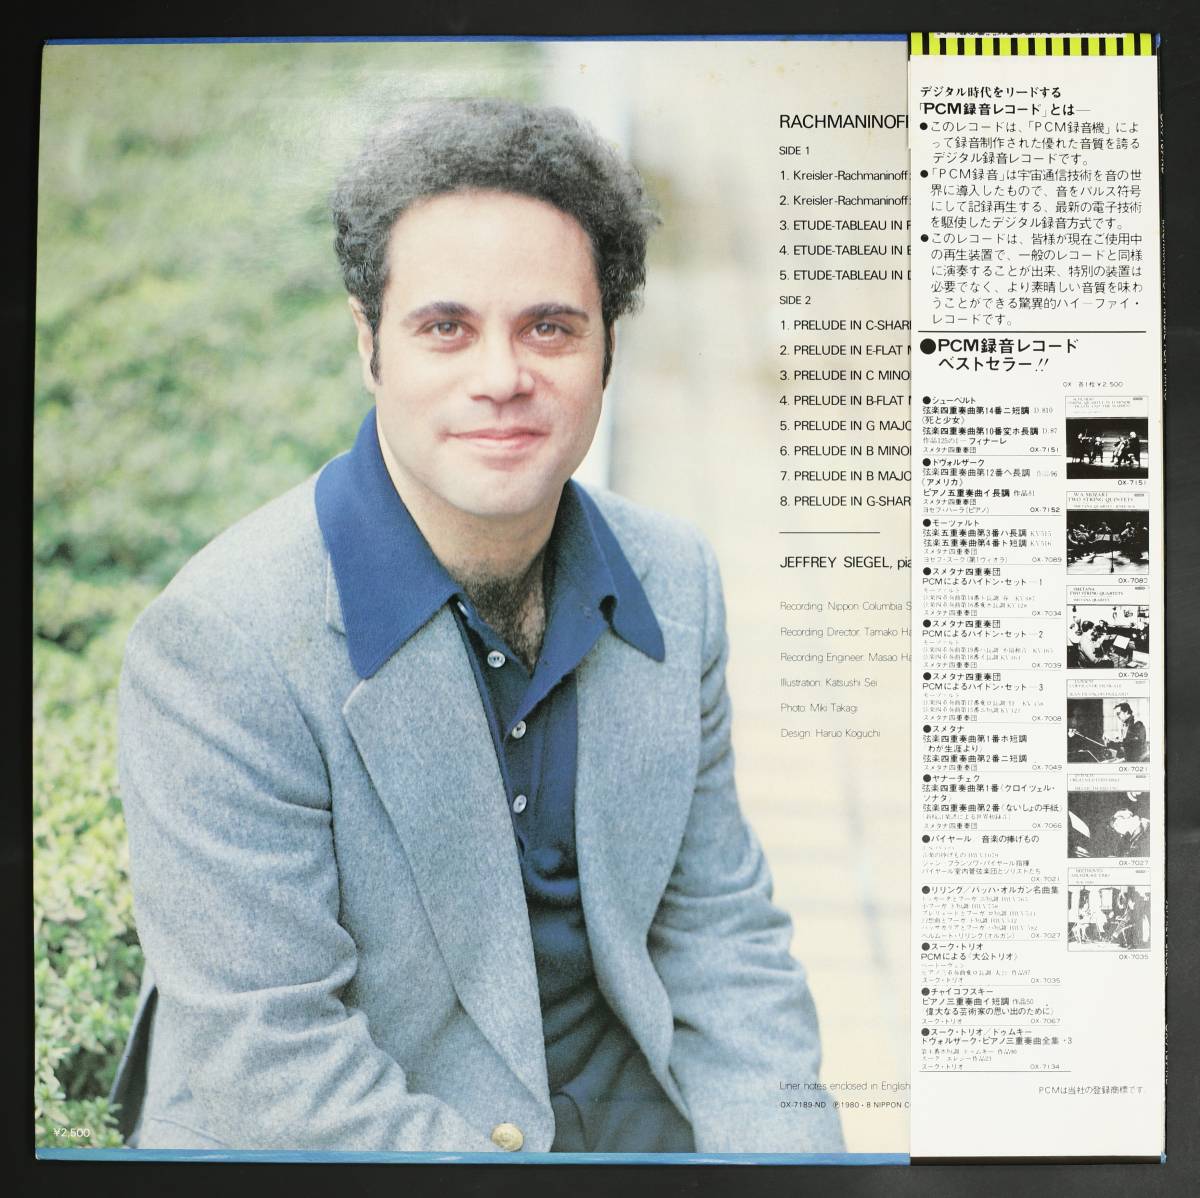 【帯付LP】ジェフリー・シーゲル/ラフマニノフ:ピアノ名曲集(並良品,1978日本録音,Jeffrey Siegel)_画像2